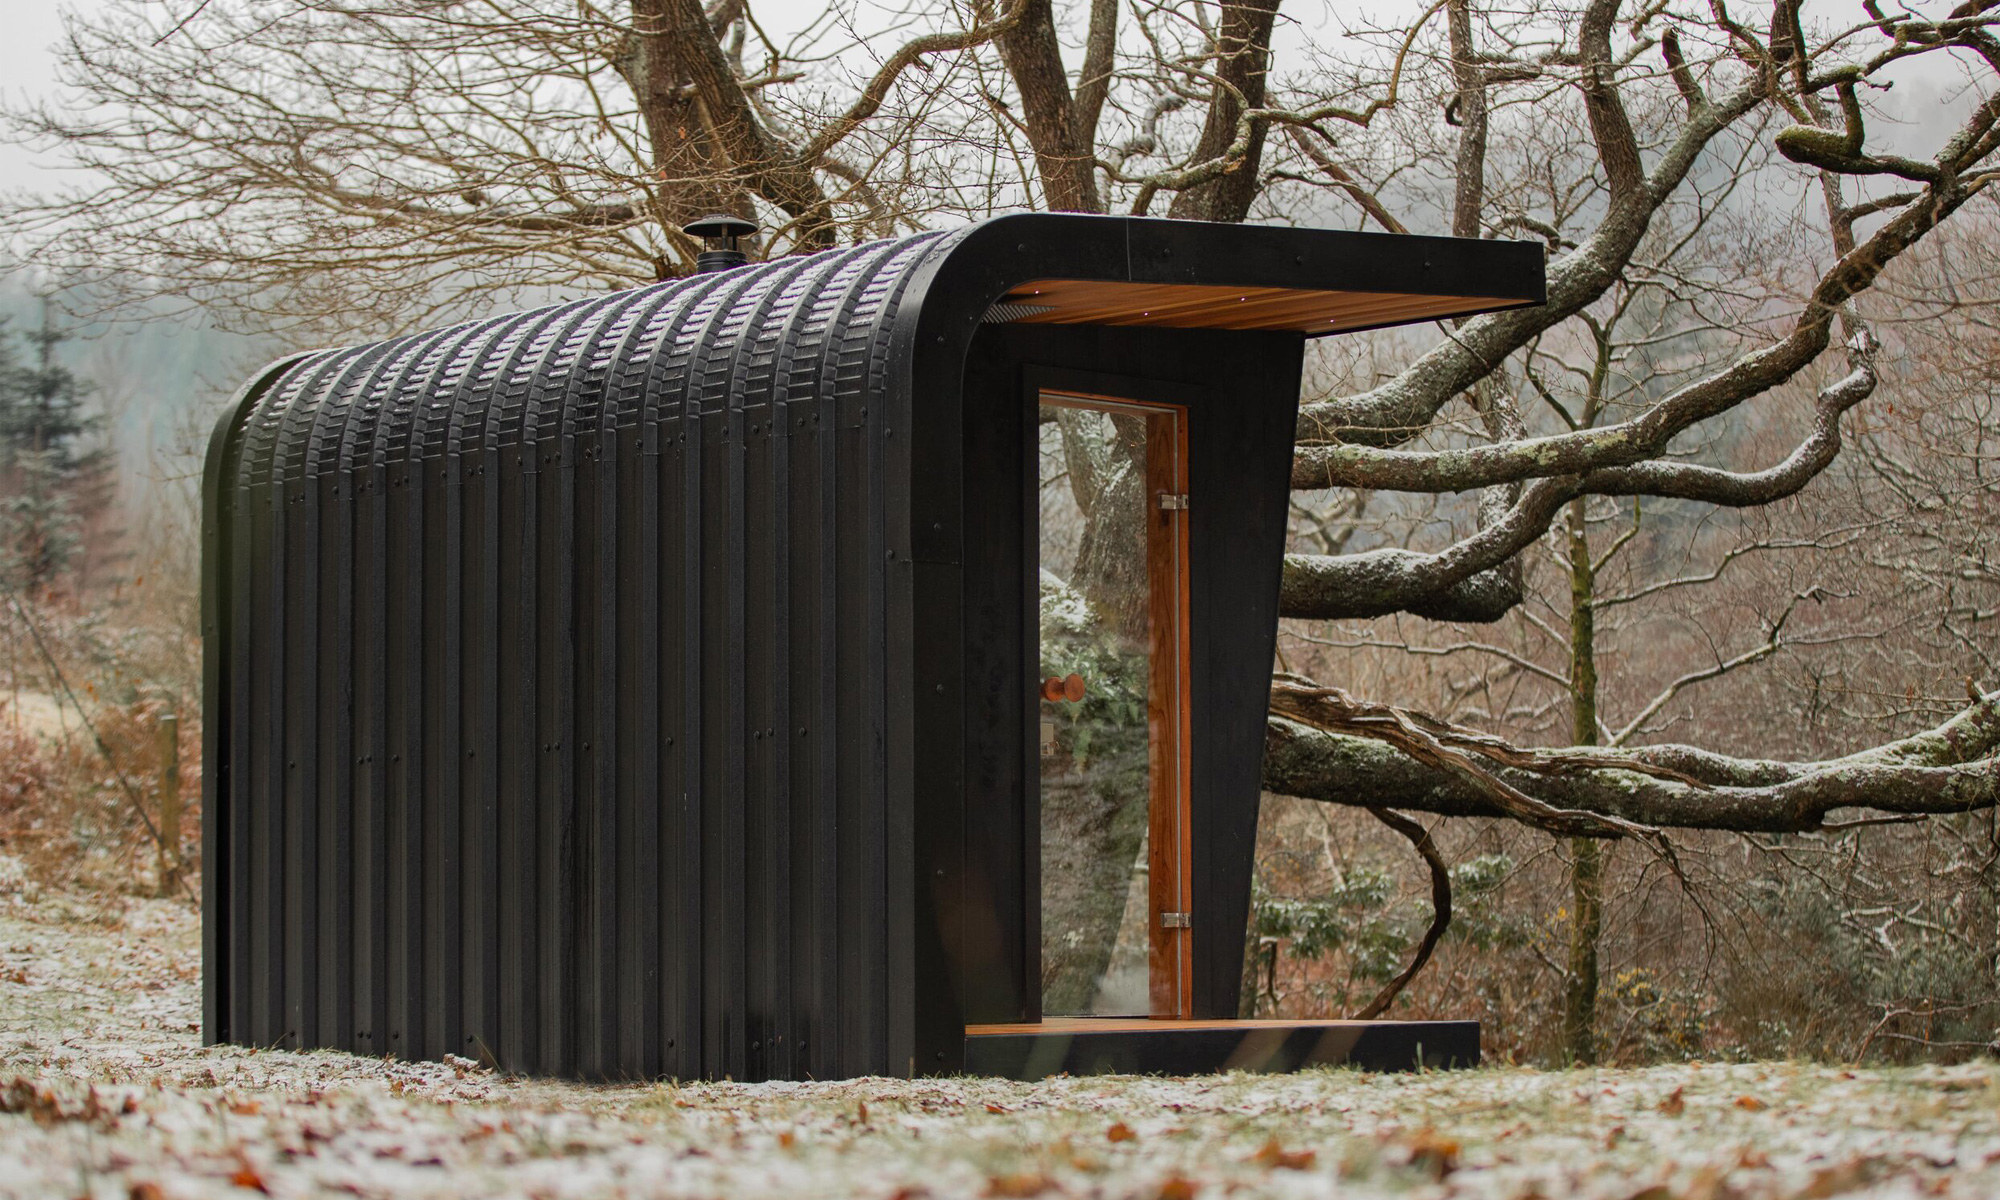 Aire outdoor sauna